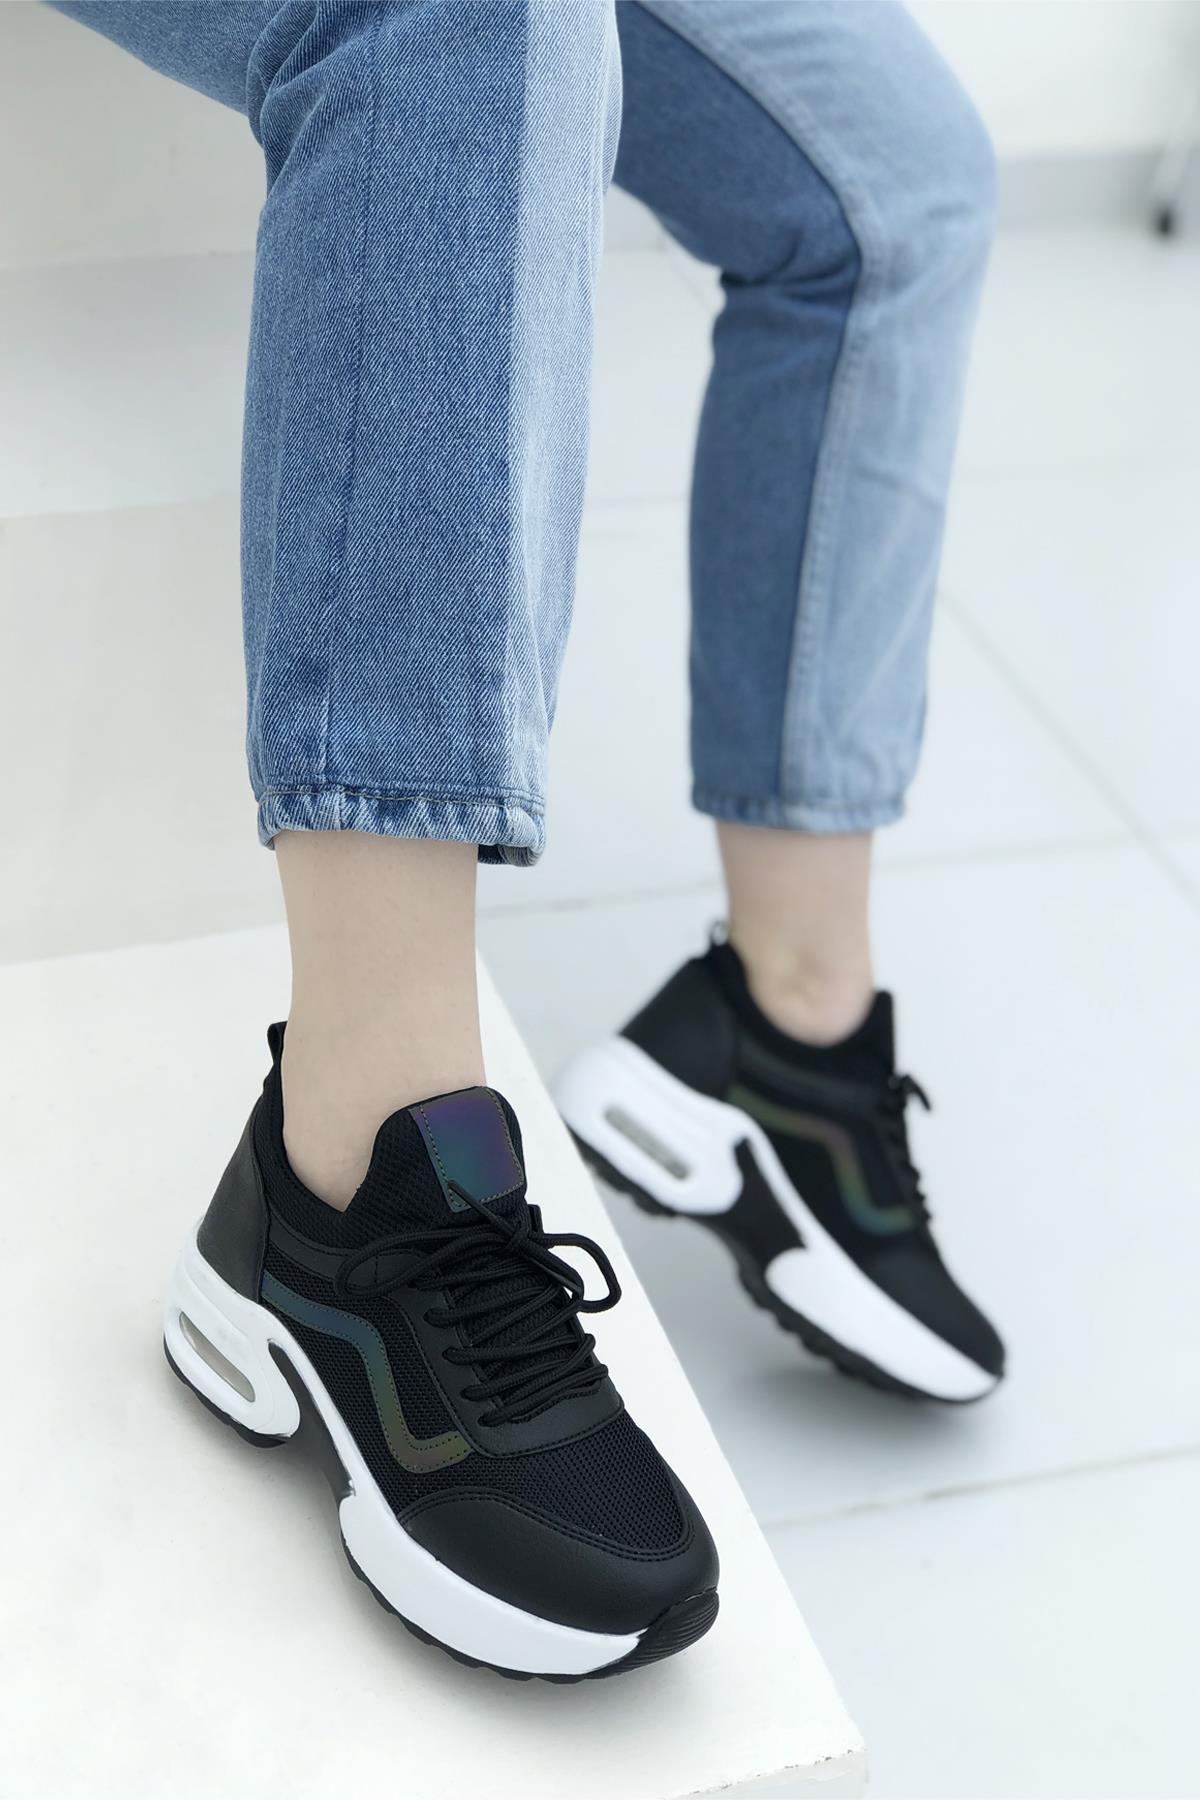 Fileli Bağcıklı Yüksek Taban Kadın Günlük Spor Ayakkabı Siyah Beyaz 121  FLET | Mybella Shoes